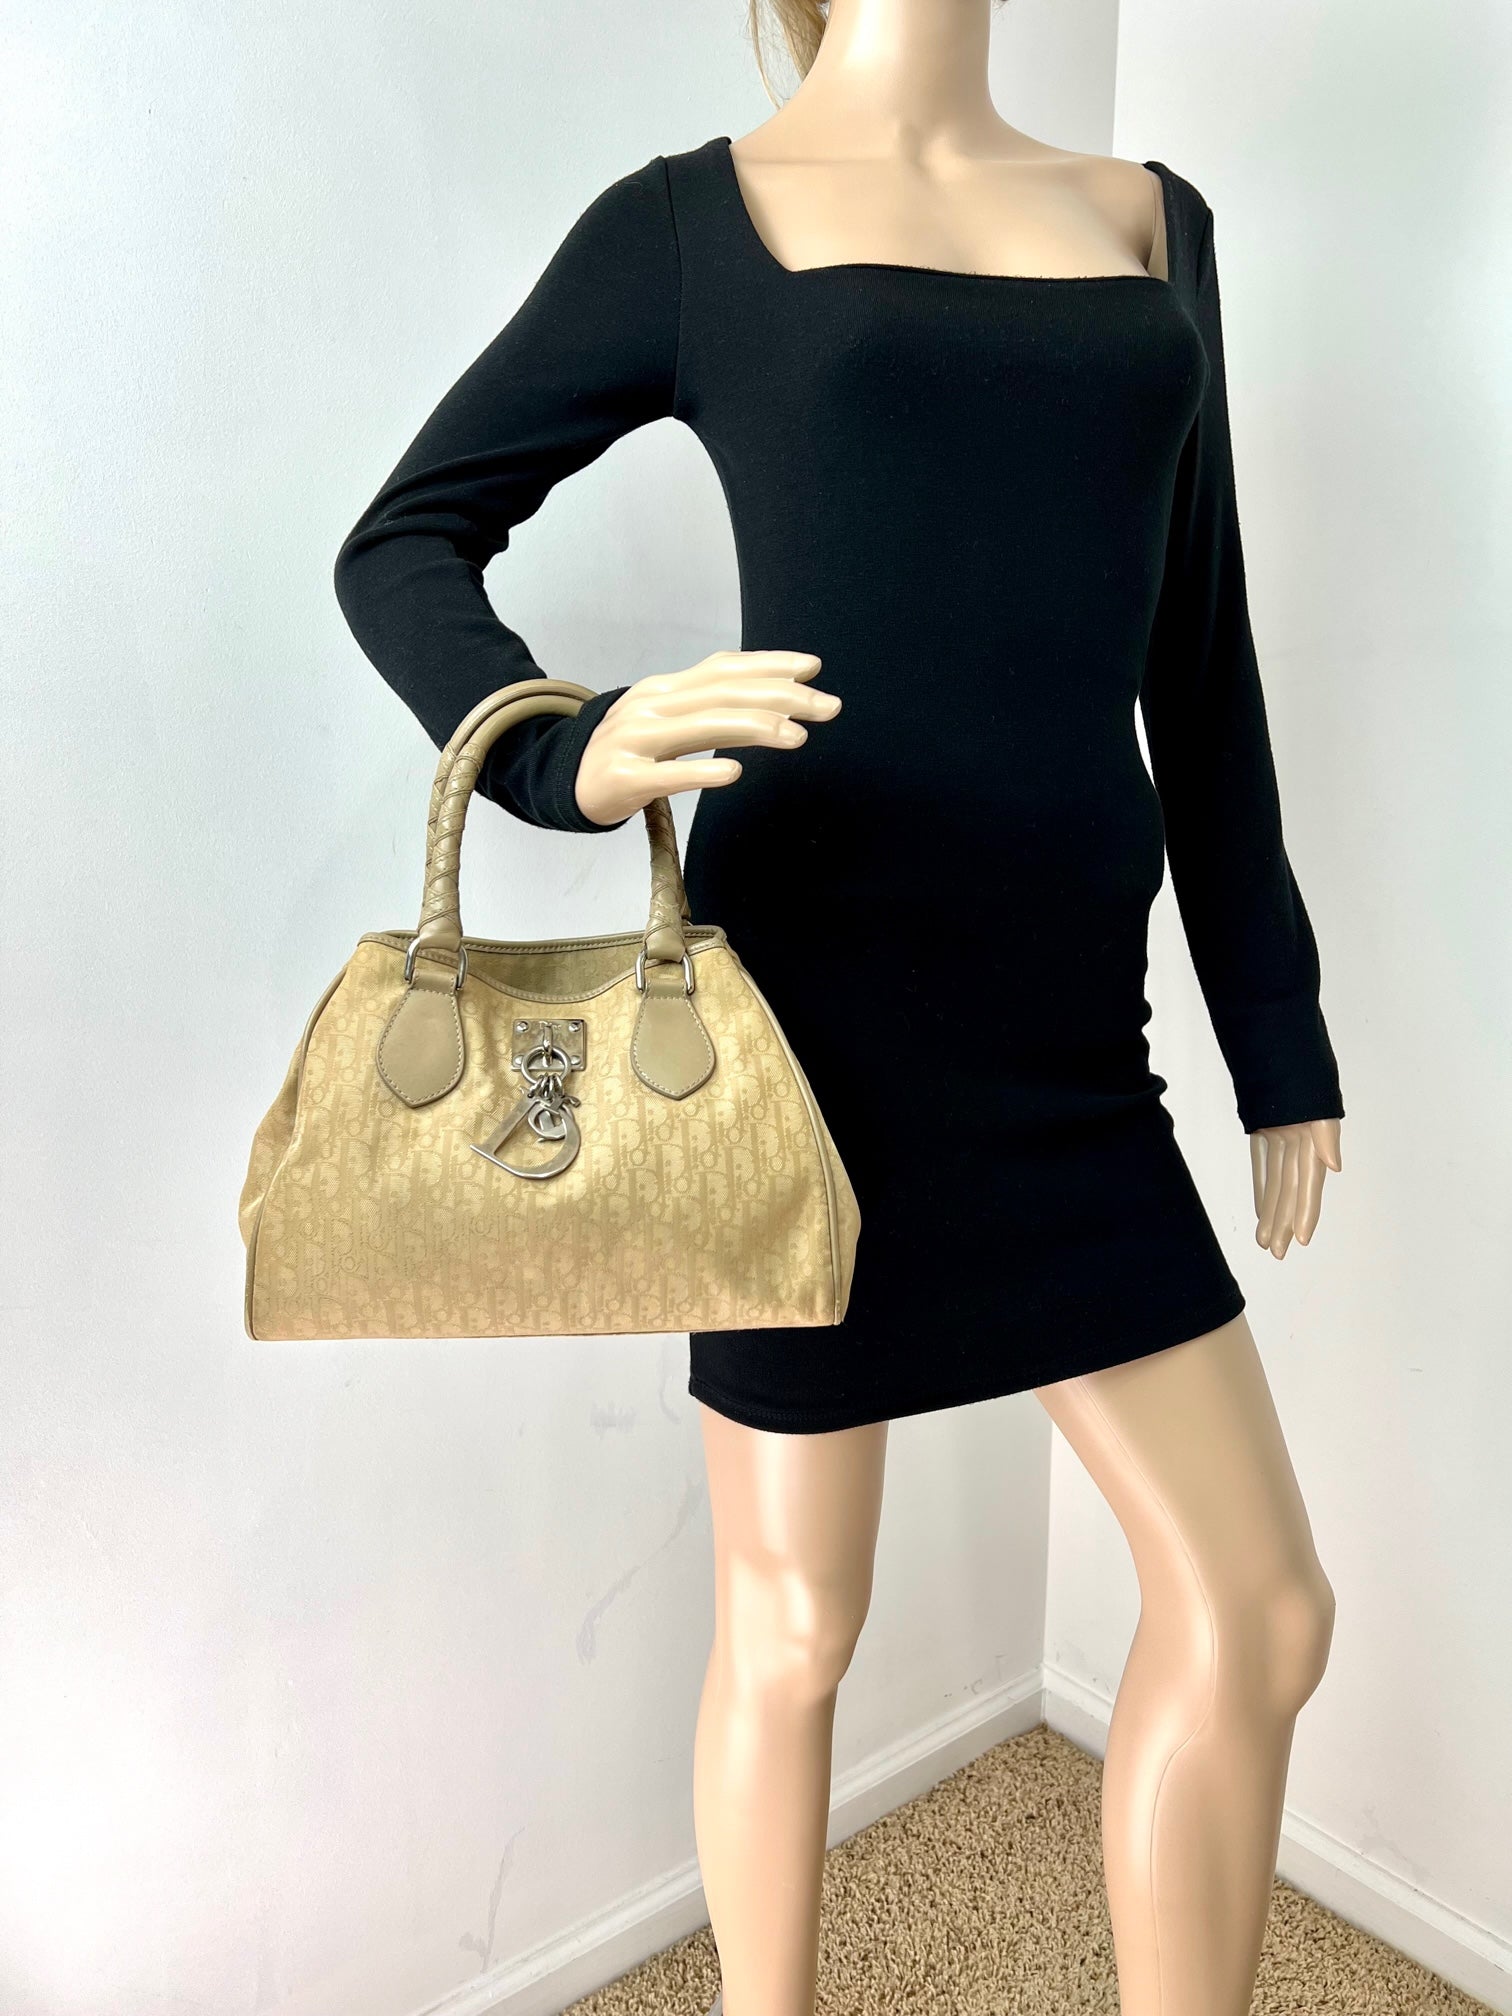 Christian Dior Diorissimo Canvas Small Beige Tote Bag